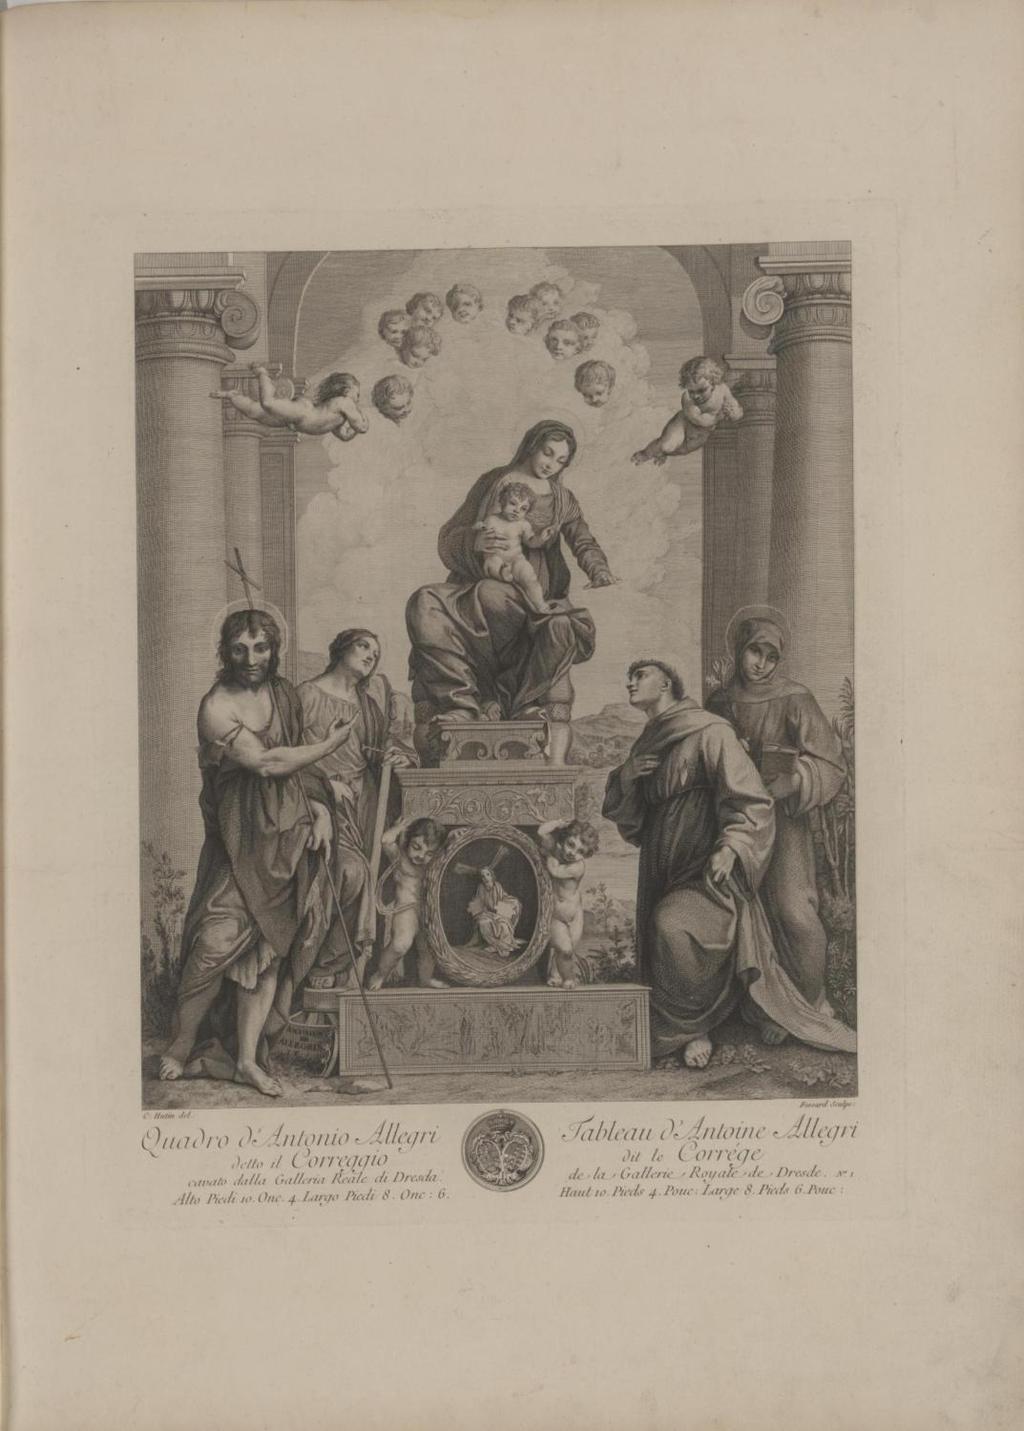 CHARLES FRANÇOIS HUTIN & ÉTIENNE FESSARD NACH CORREGGIO: Thronende Madonna, Kupferstich, 1753, in: CARL HEINRICH VON